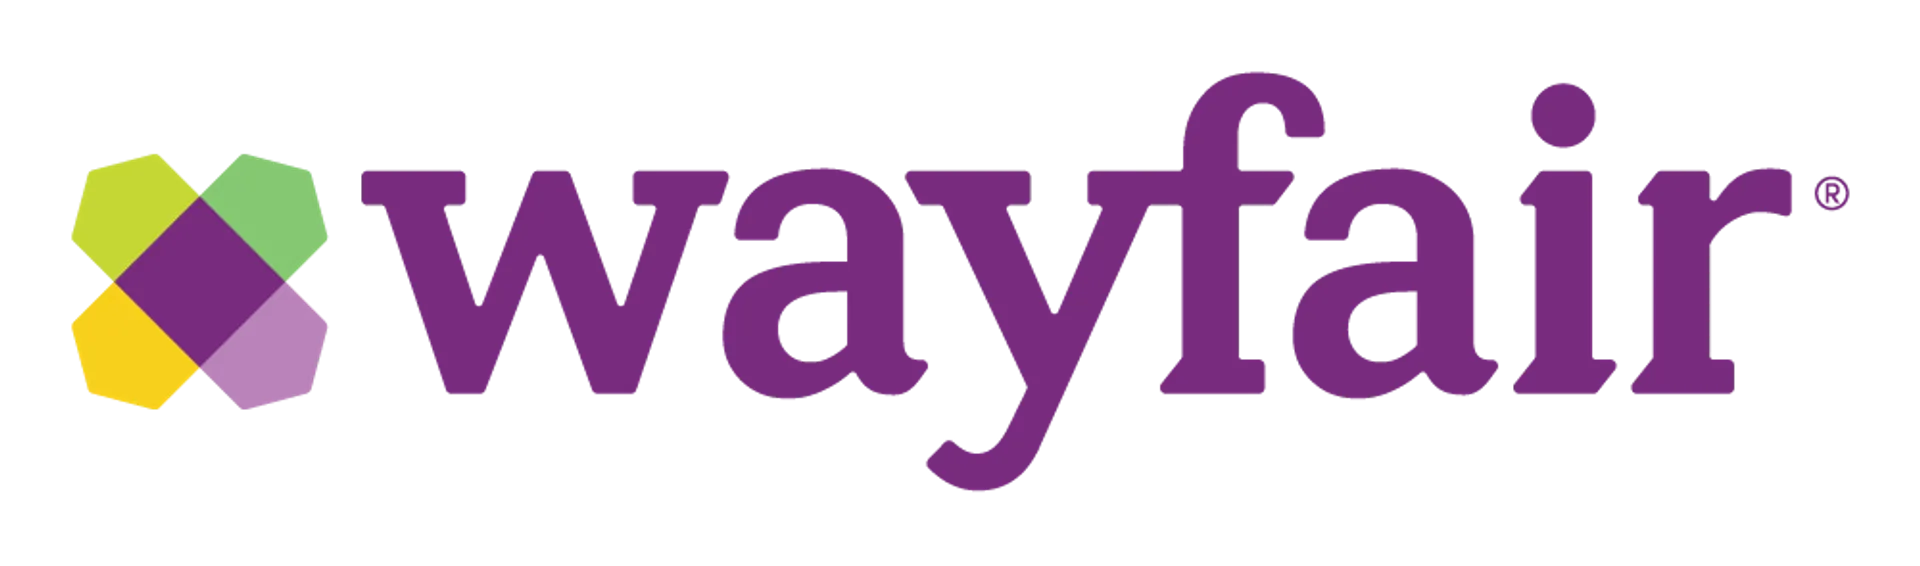 WAYFAIR logo. Current weekly ad